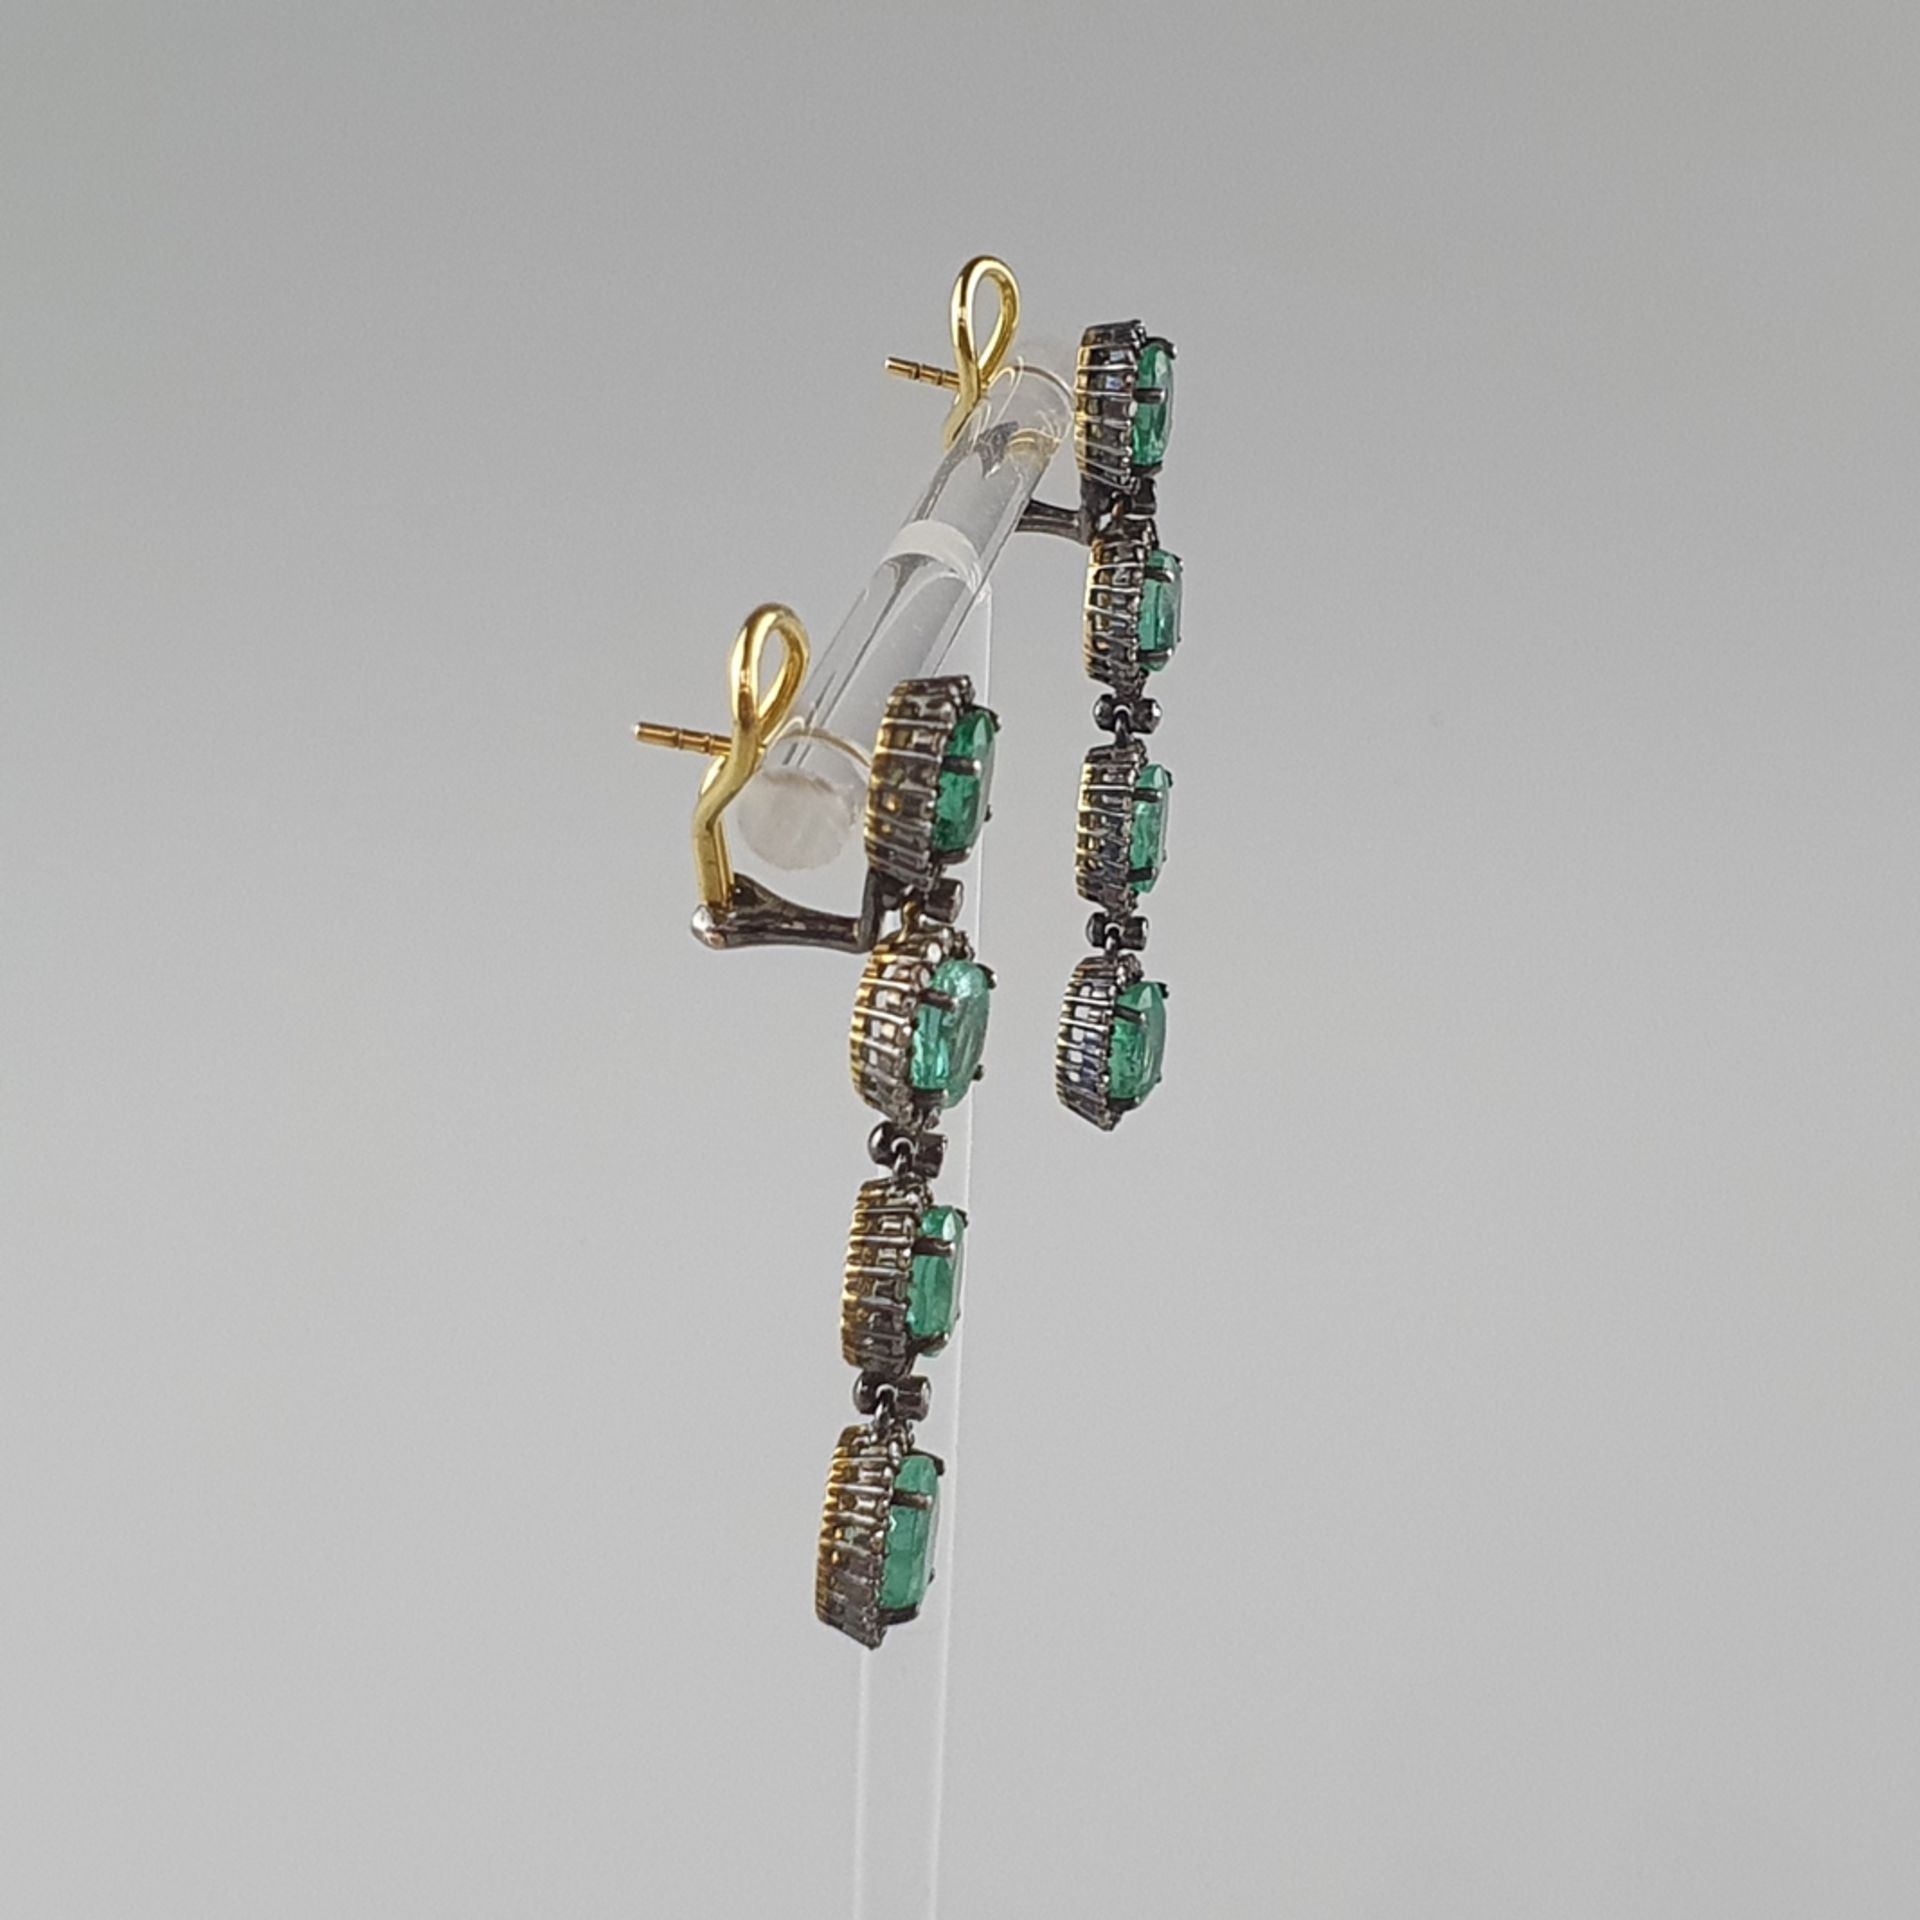 Ein Paar prunkvolle Ohrhänger/-stecker mit Smaragden und Diamanten - Silber, teils vergoldet, Abhän - Bild 3 aus 5